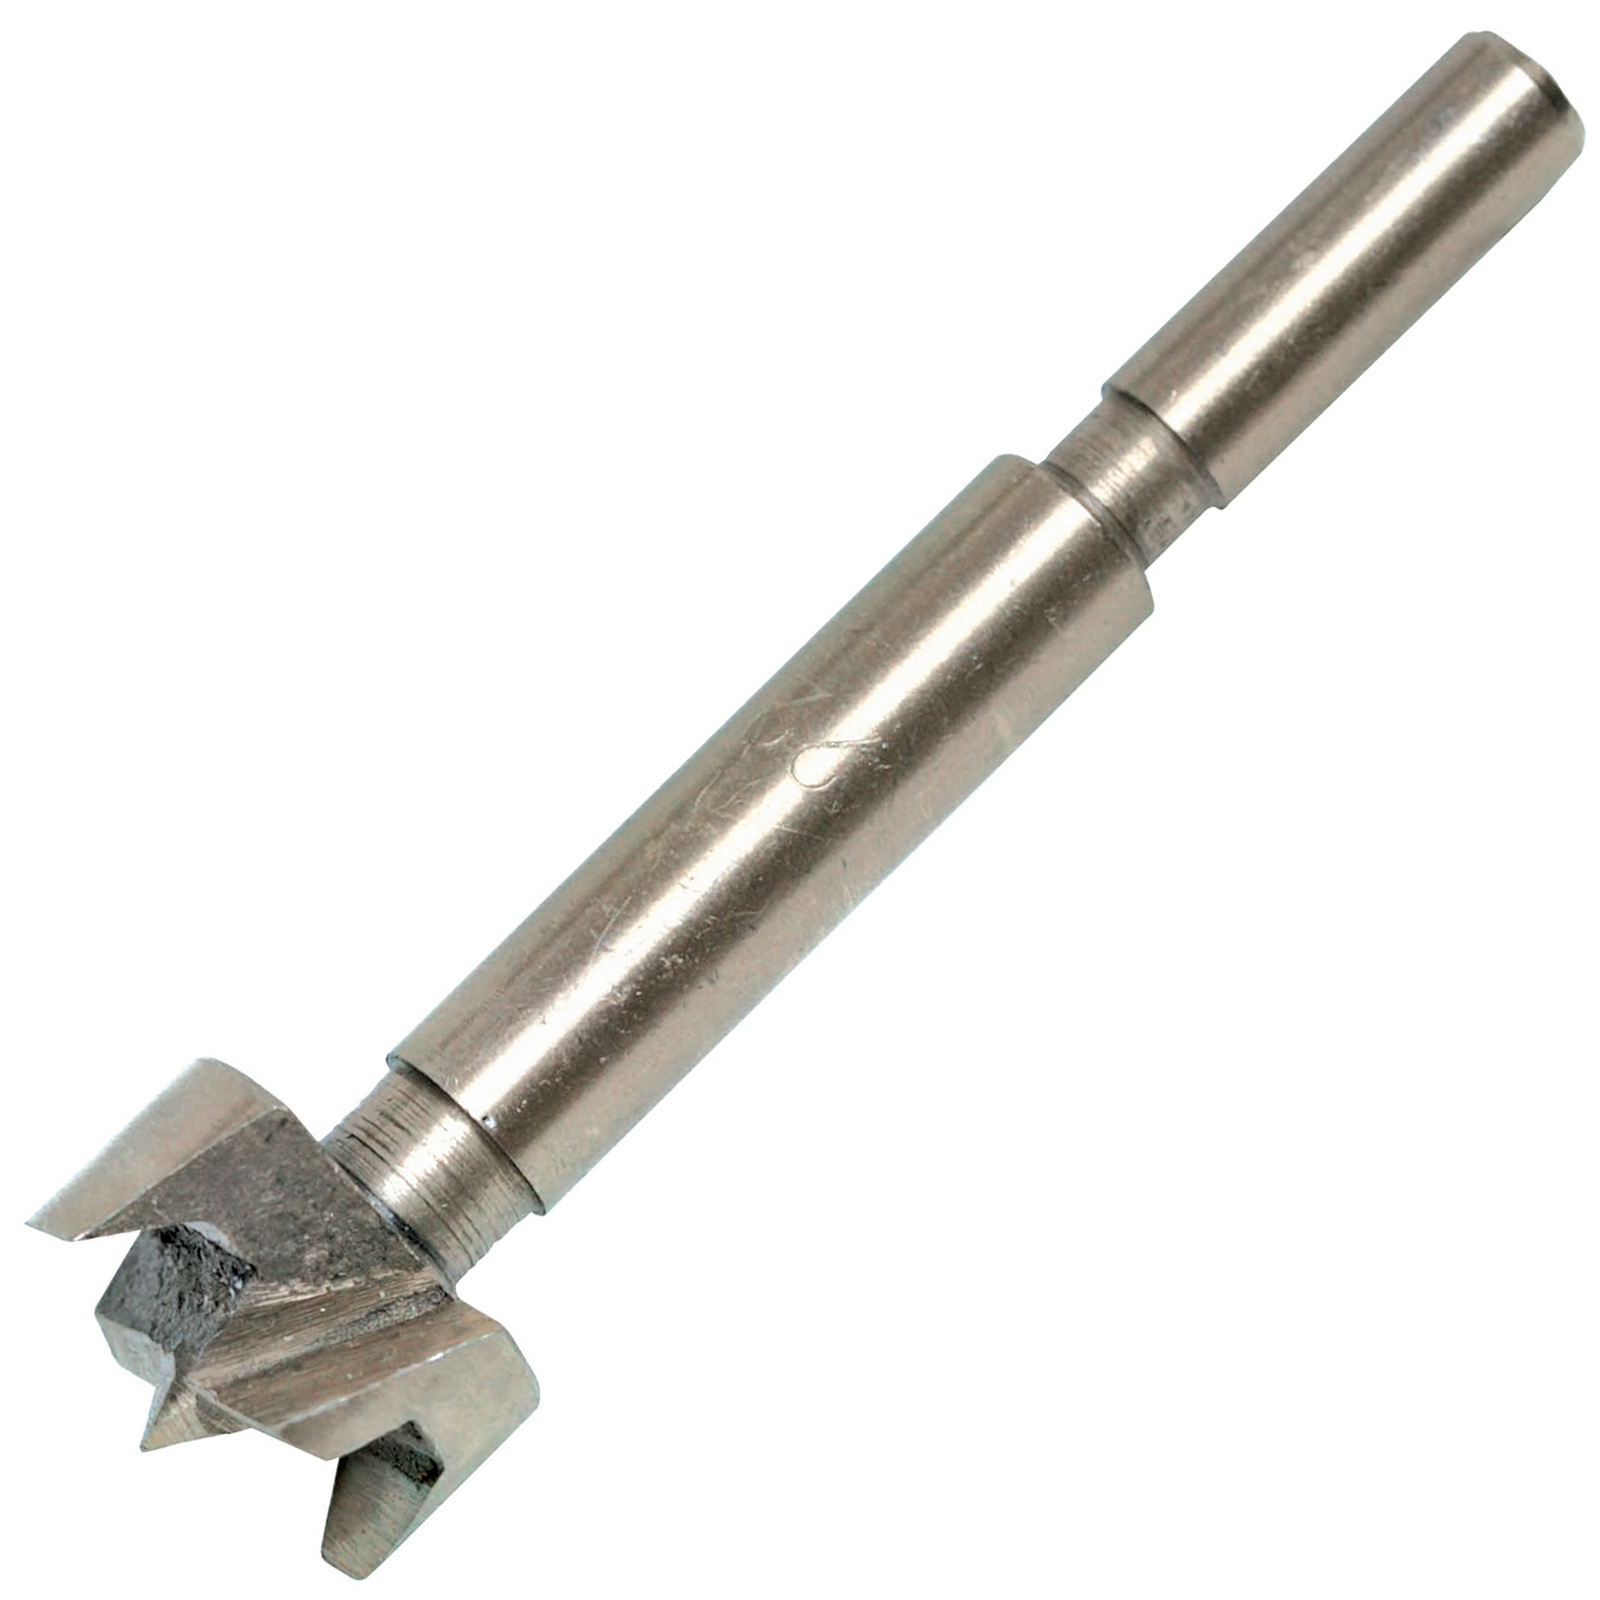 Forstner drill bits used for